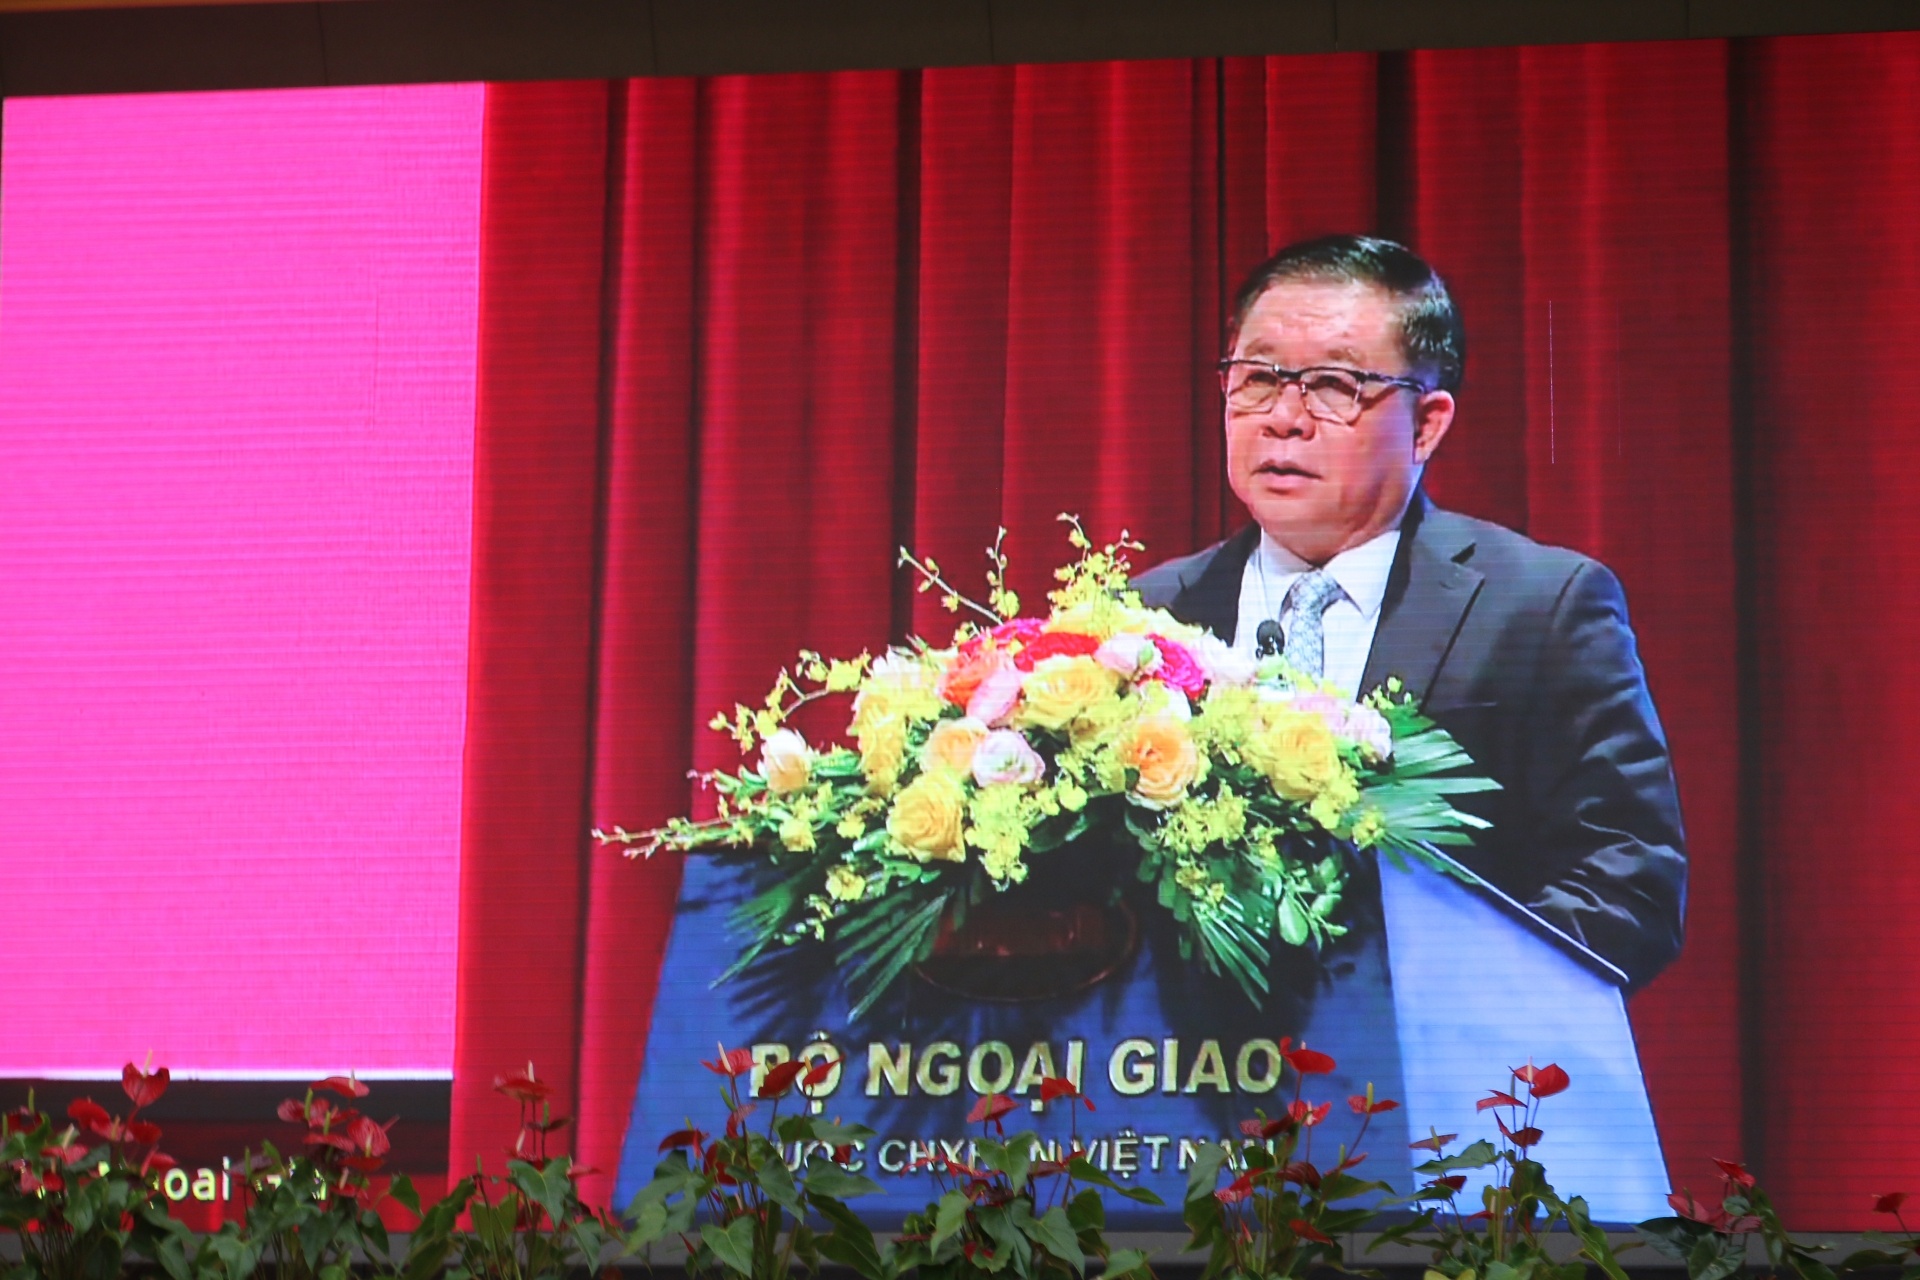 Đồng chí Nguyễn Trọng Nghĩa - Bí thư Trung ương Đảng, Trưởng Ban Tuyên giáo Trung ương, Trưởng Ban Chỉ đạo Công tác TTĐN Trung ương kết luận hội nghị